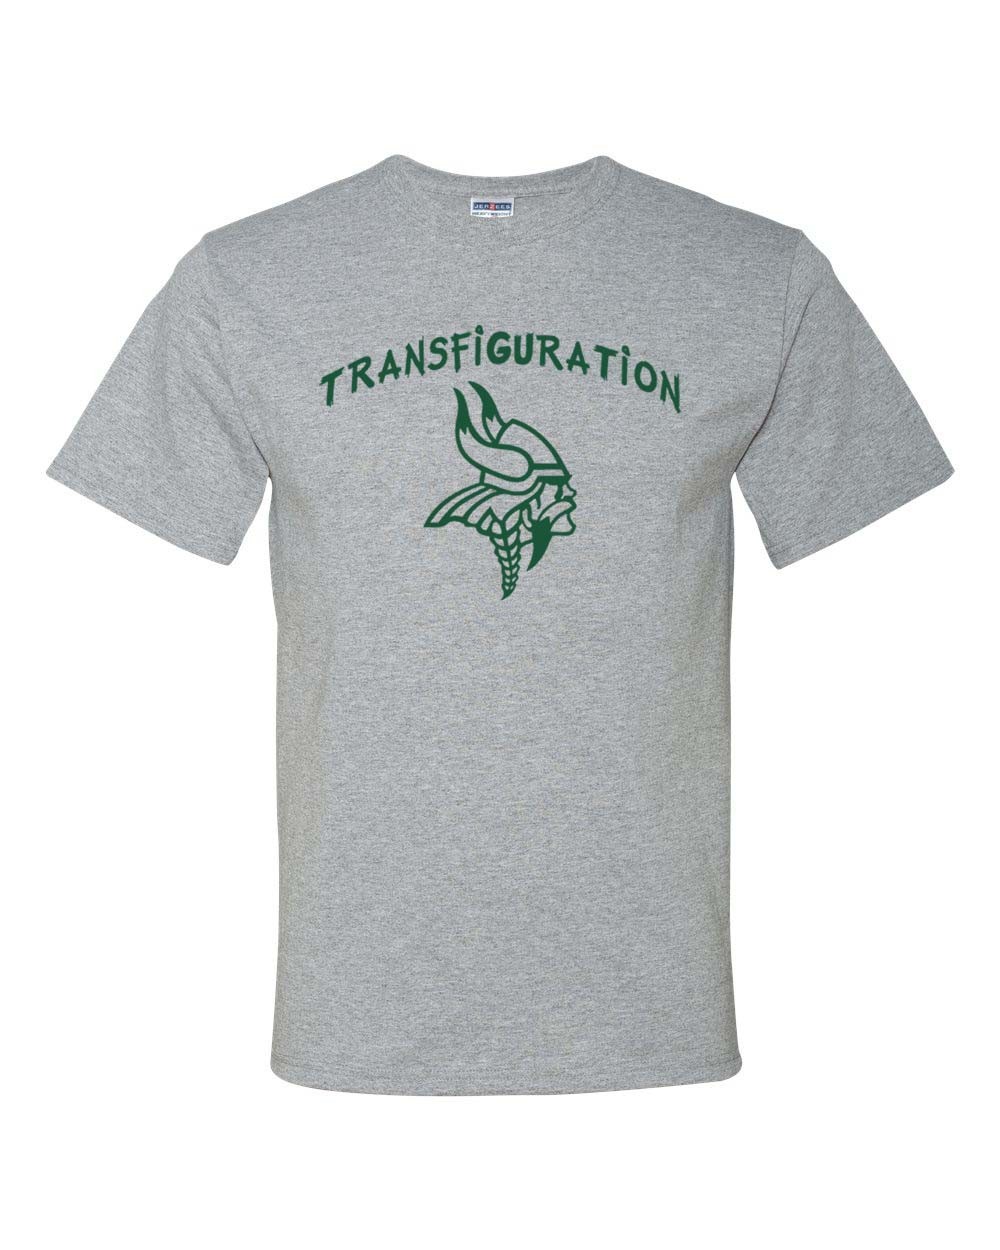 Transfiguration S/S Grey Gym T-Shirt w/ School Logo